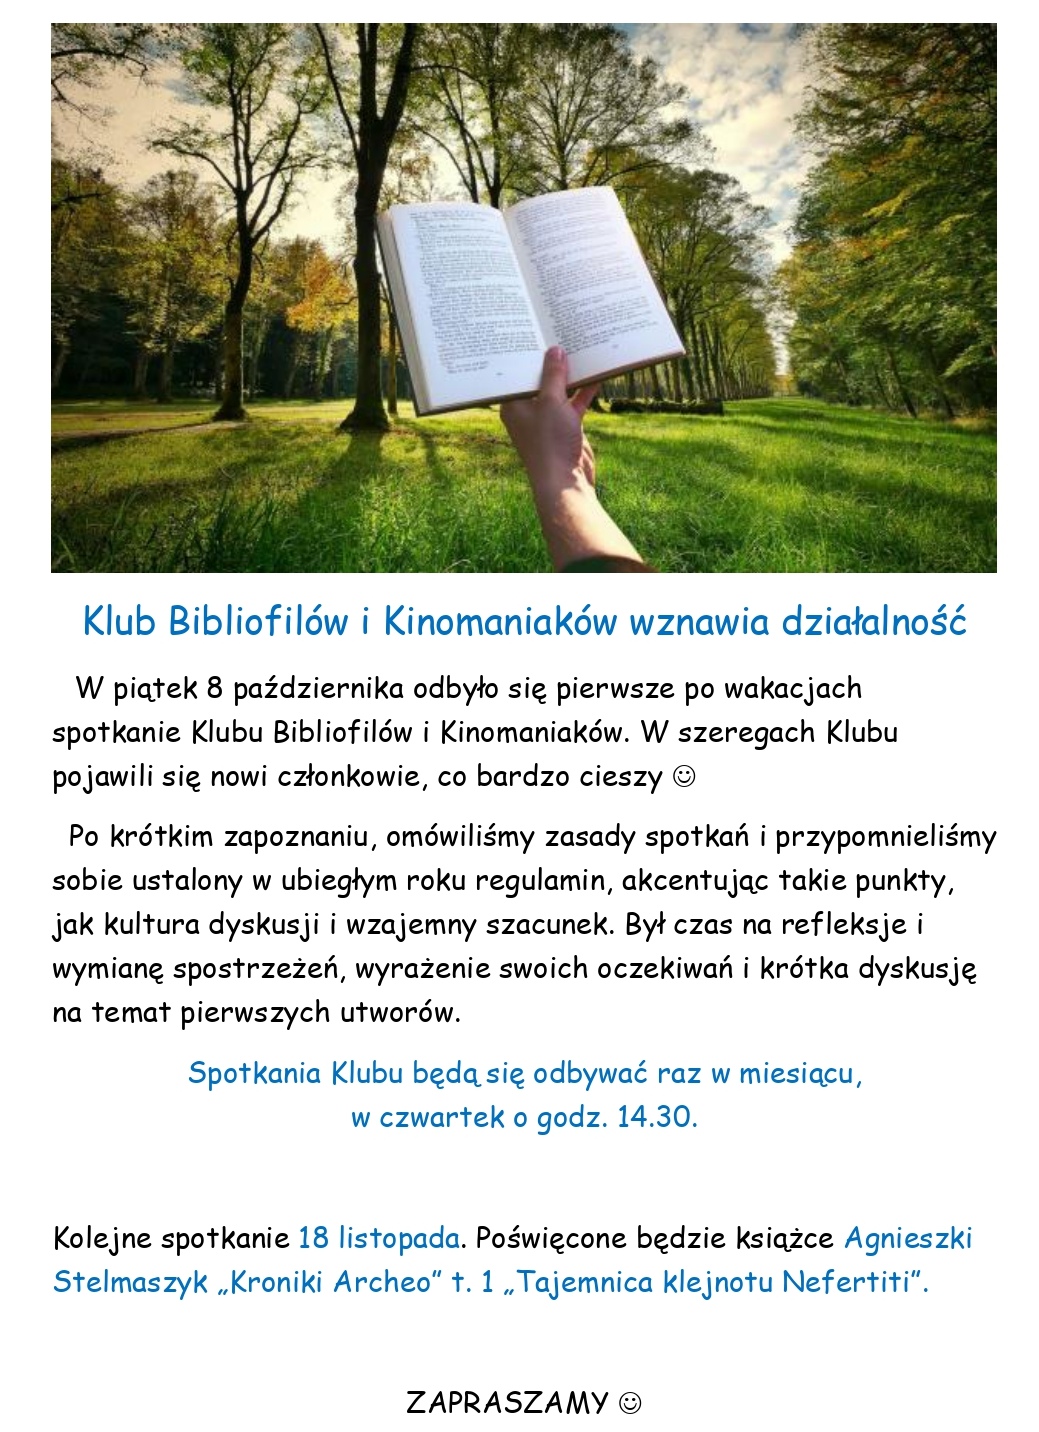 Klub Bibliofilów i Kinomaniaków wznawia działalność 2021 22 page 0001